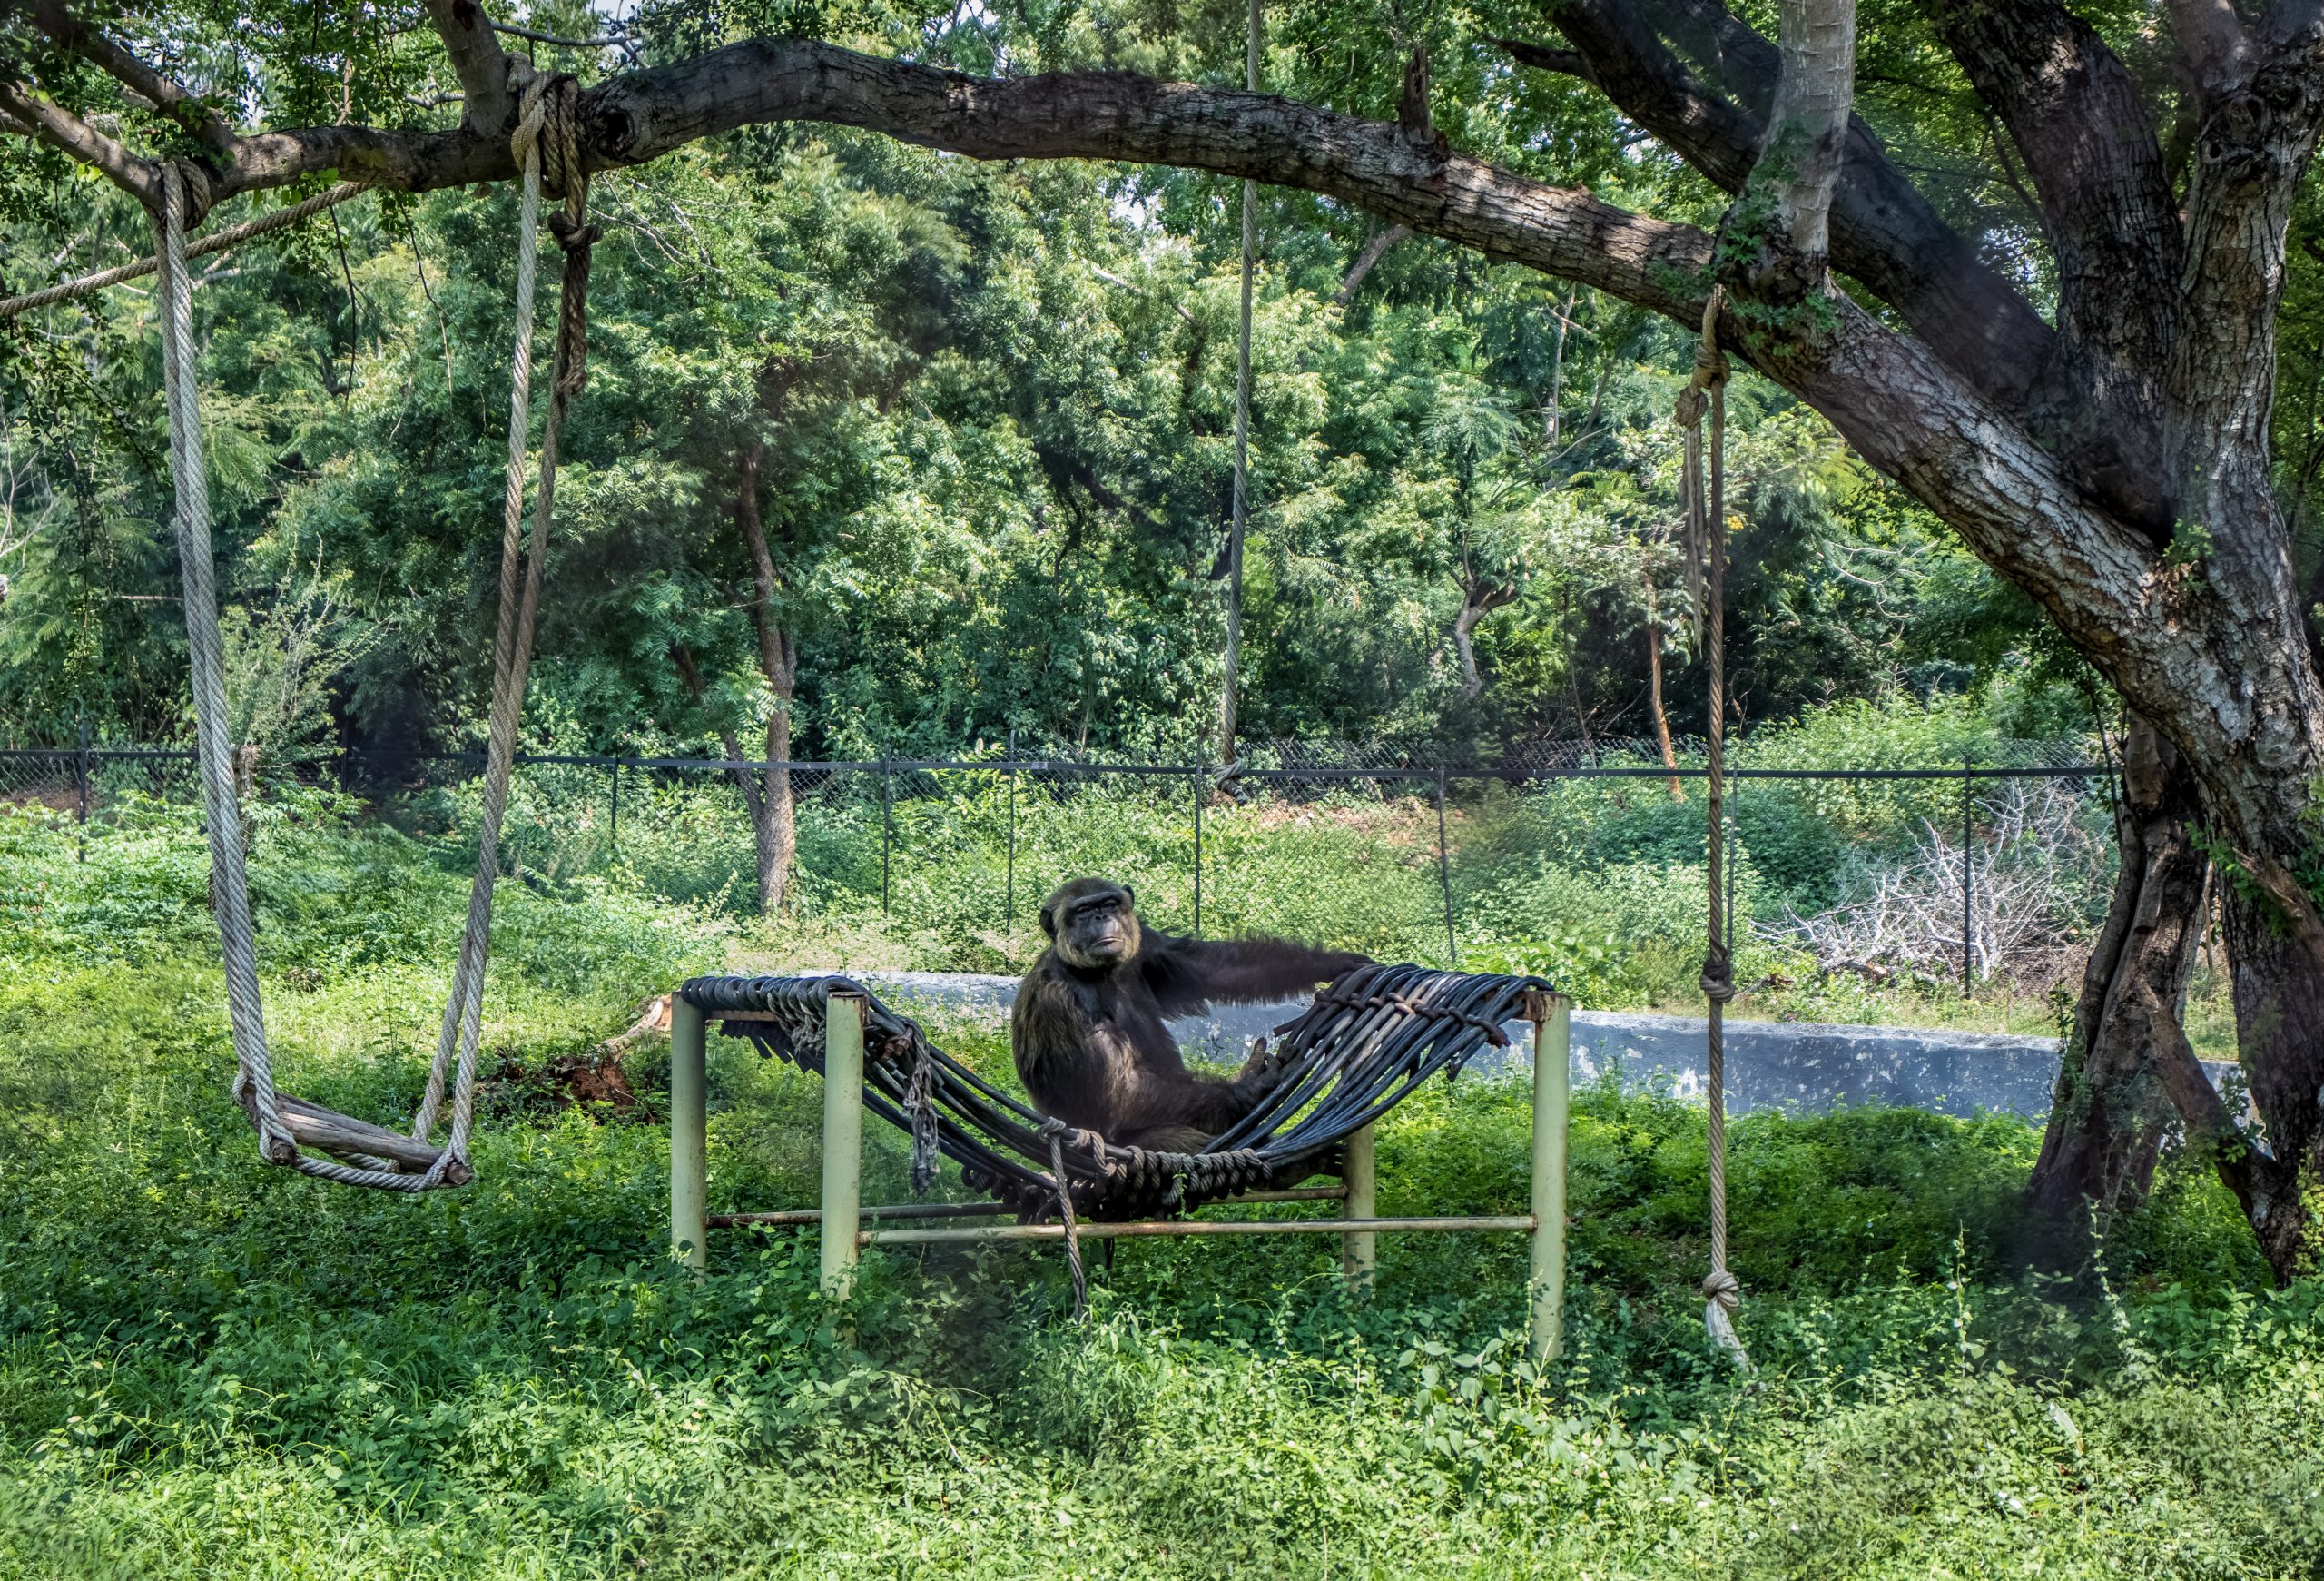 A monkey under a tree